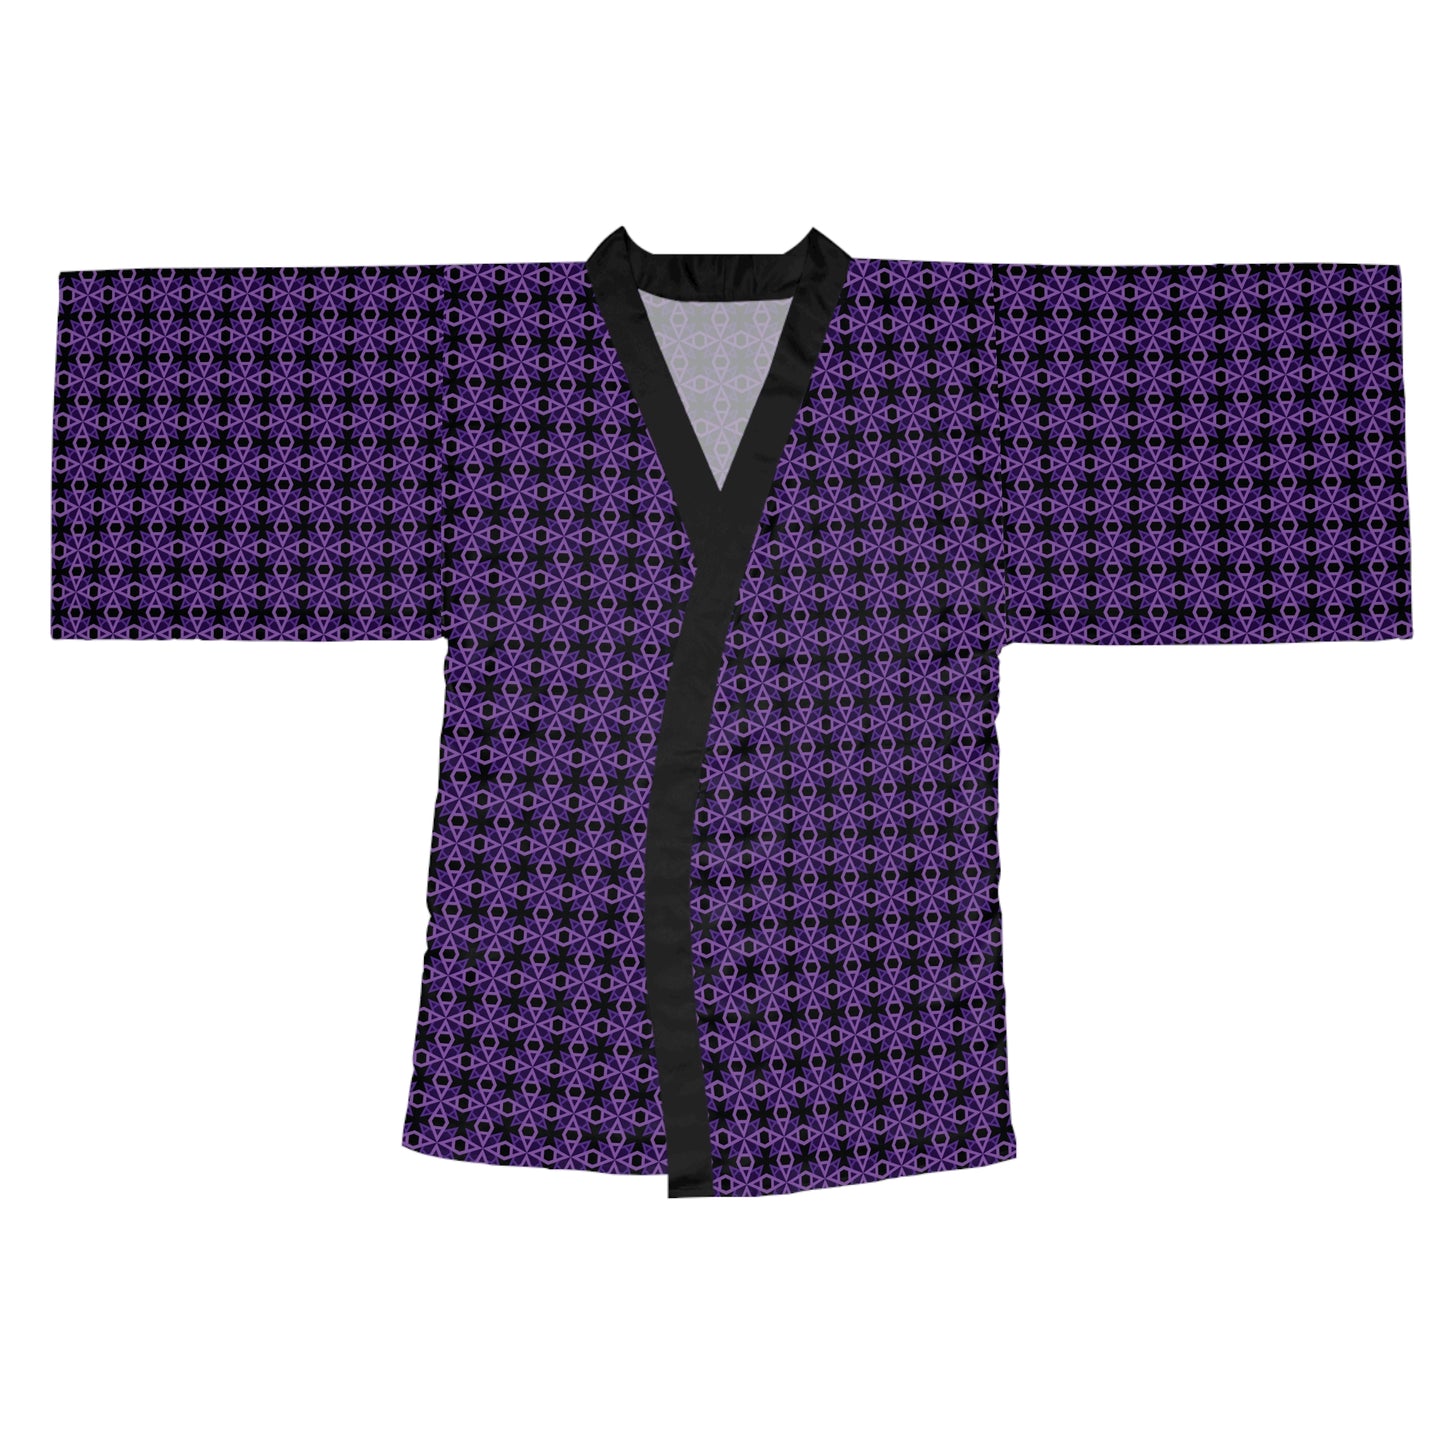 Letter Art - A - Black 000000 - Long Sleeve Kimono Robe (AOP)